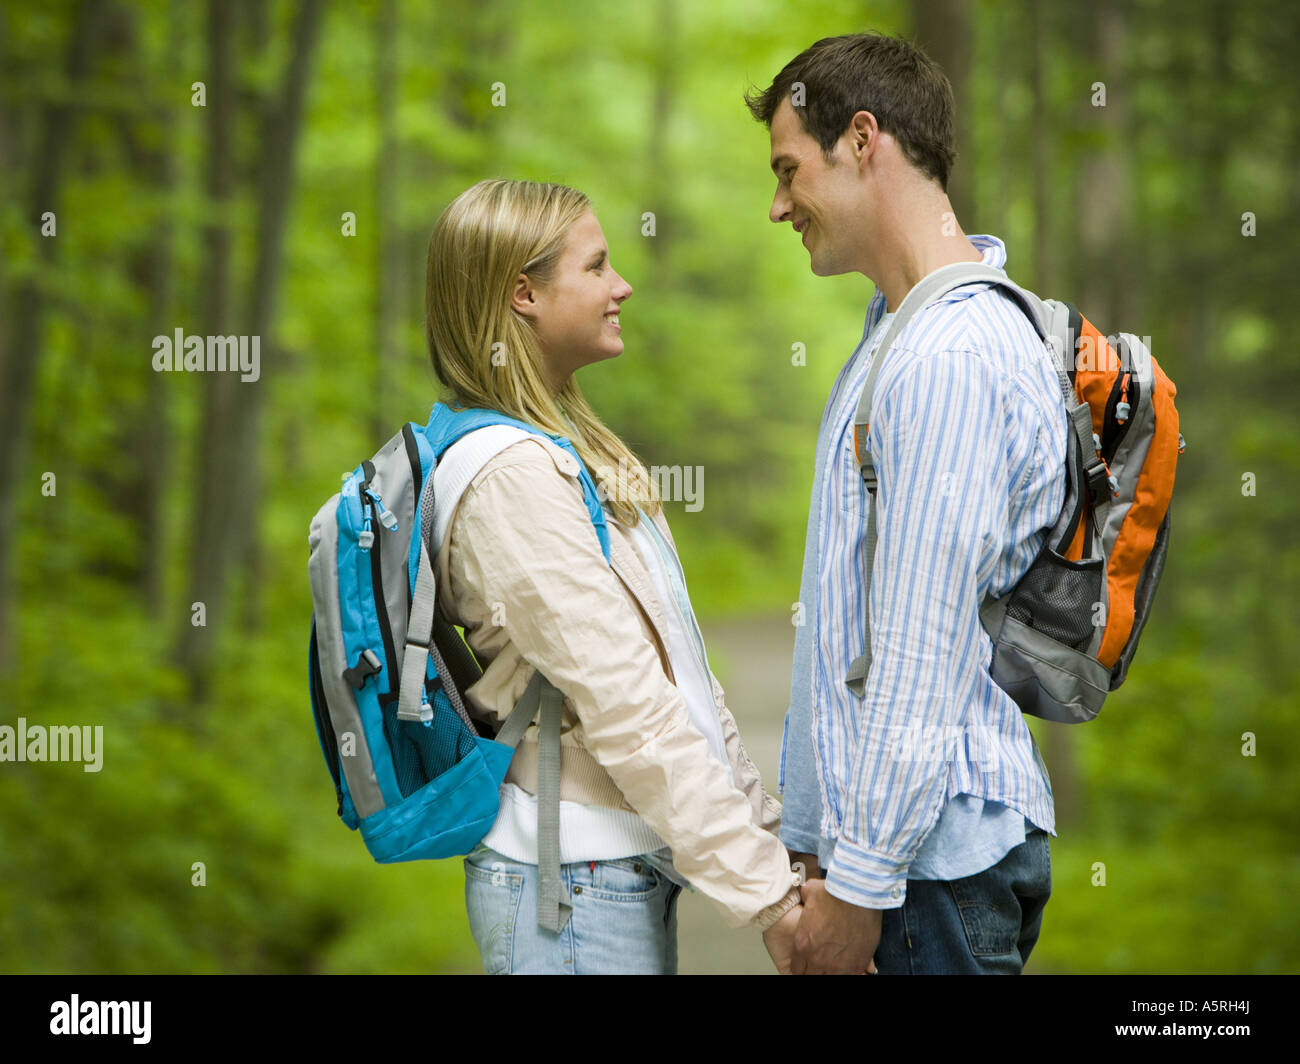 Profil eines jungen Paares einander betrachtend und lächelnd Stockfoto